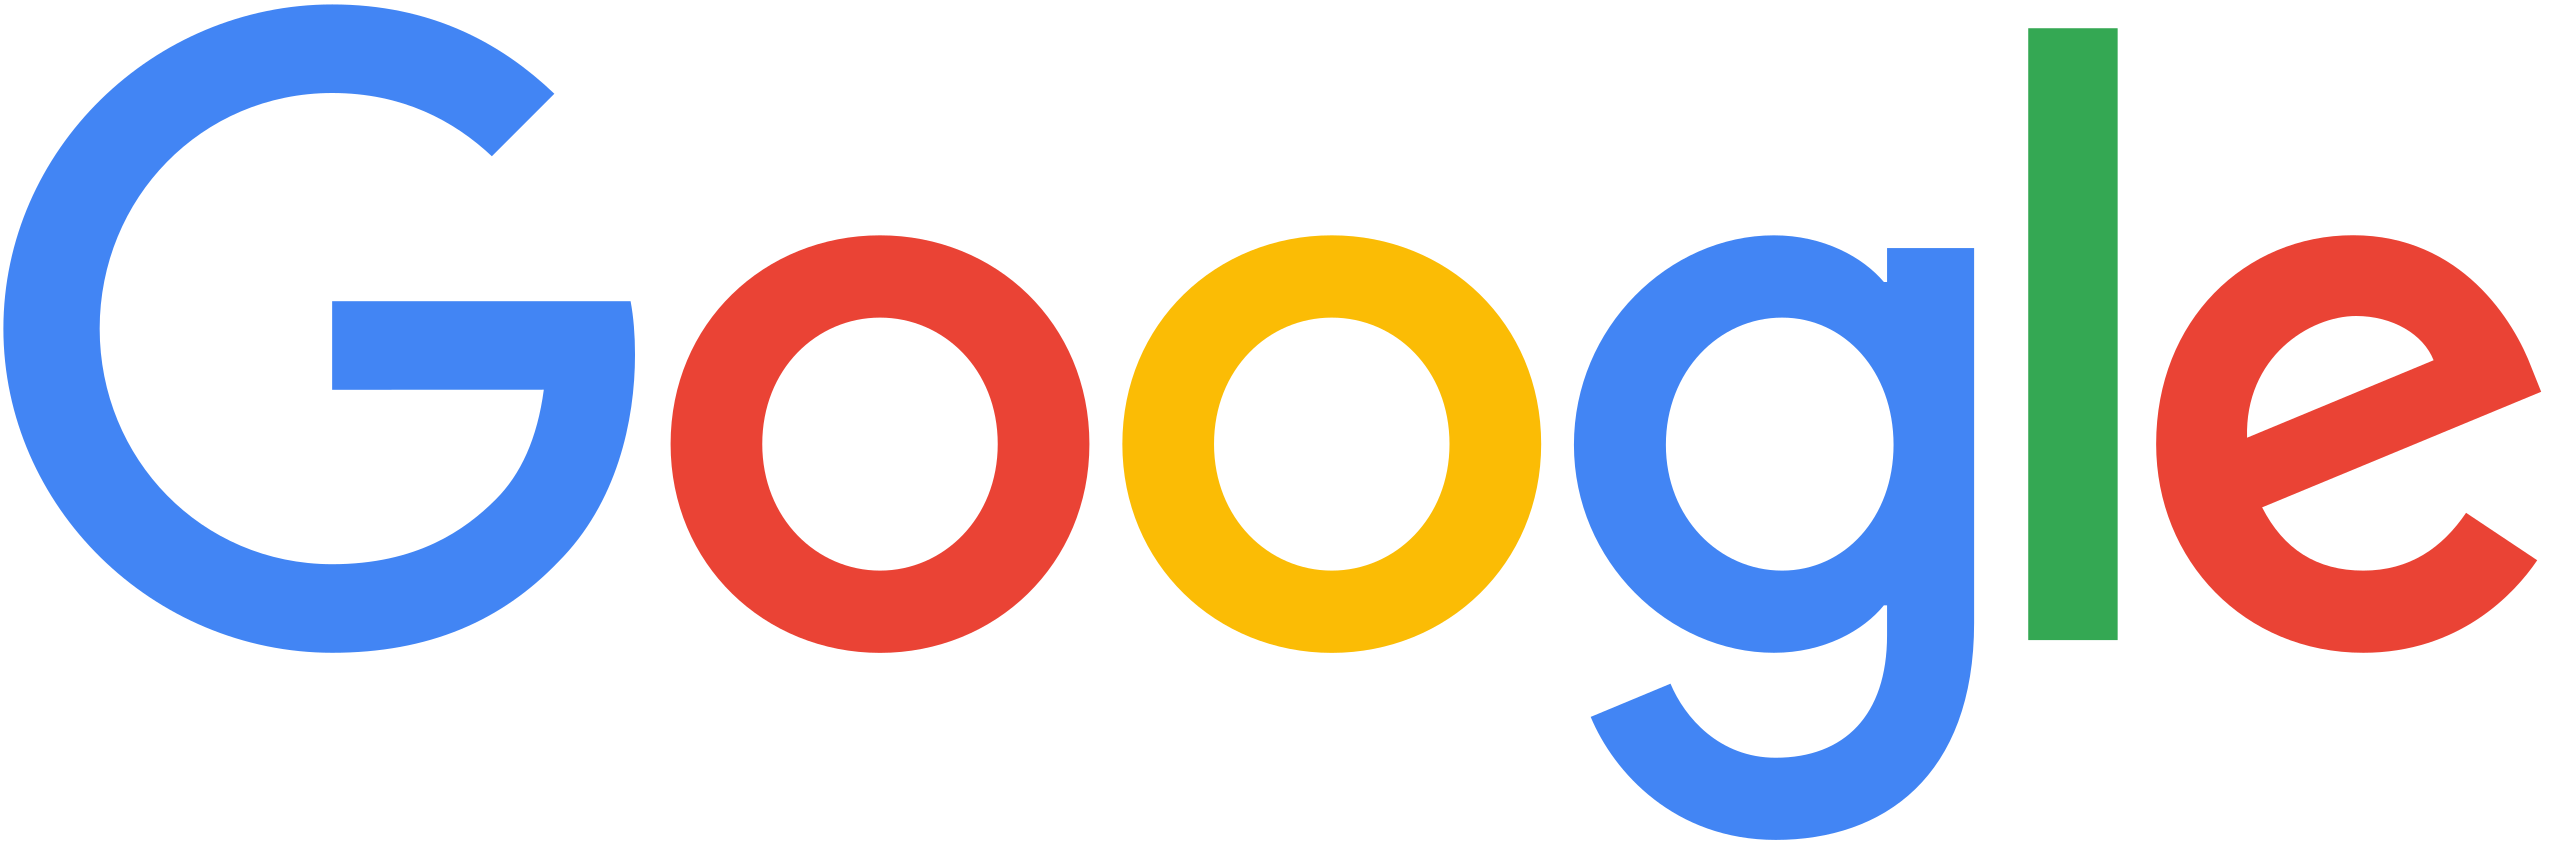 google logo for light mode